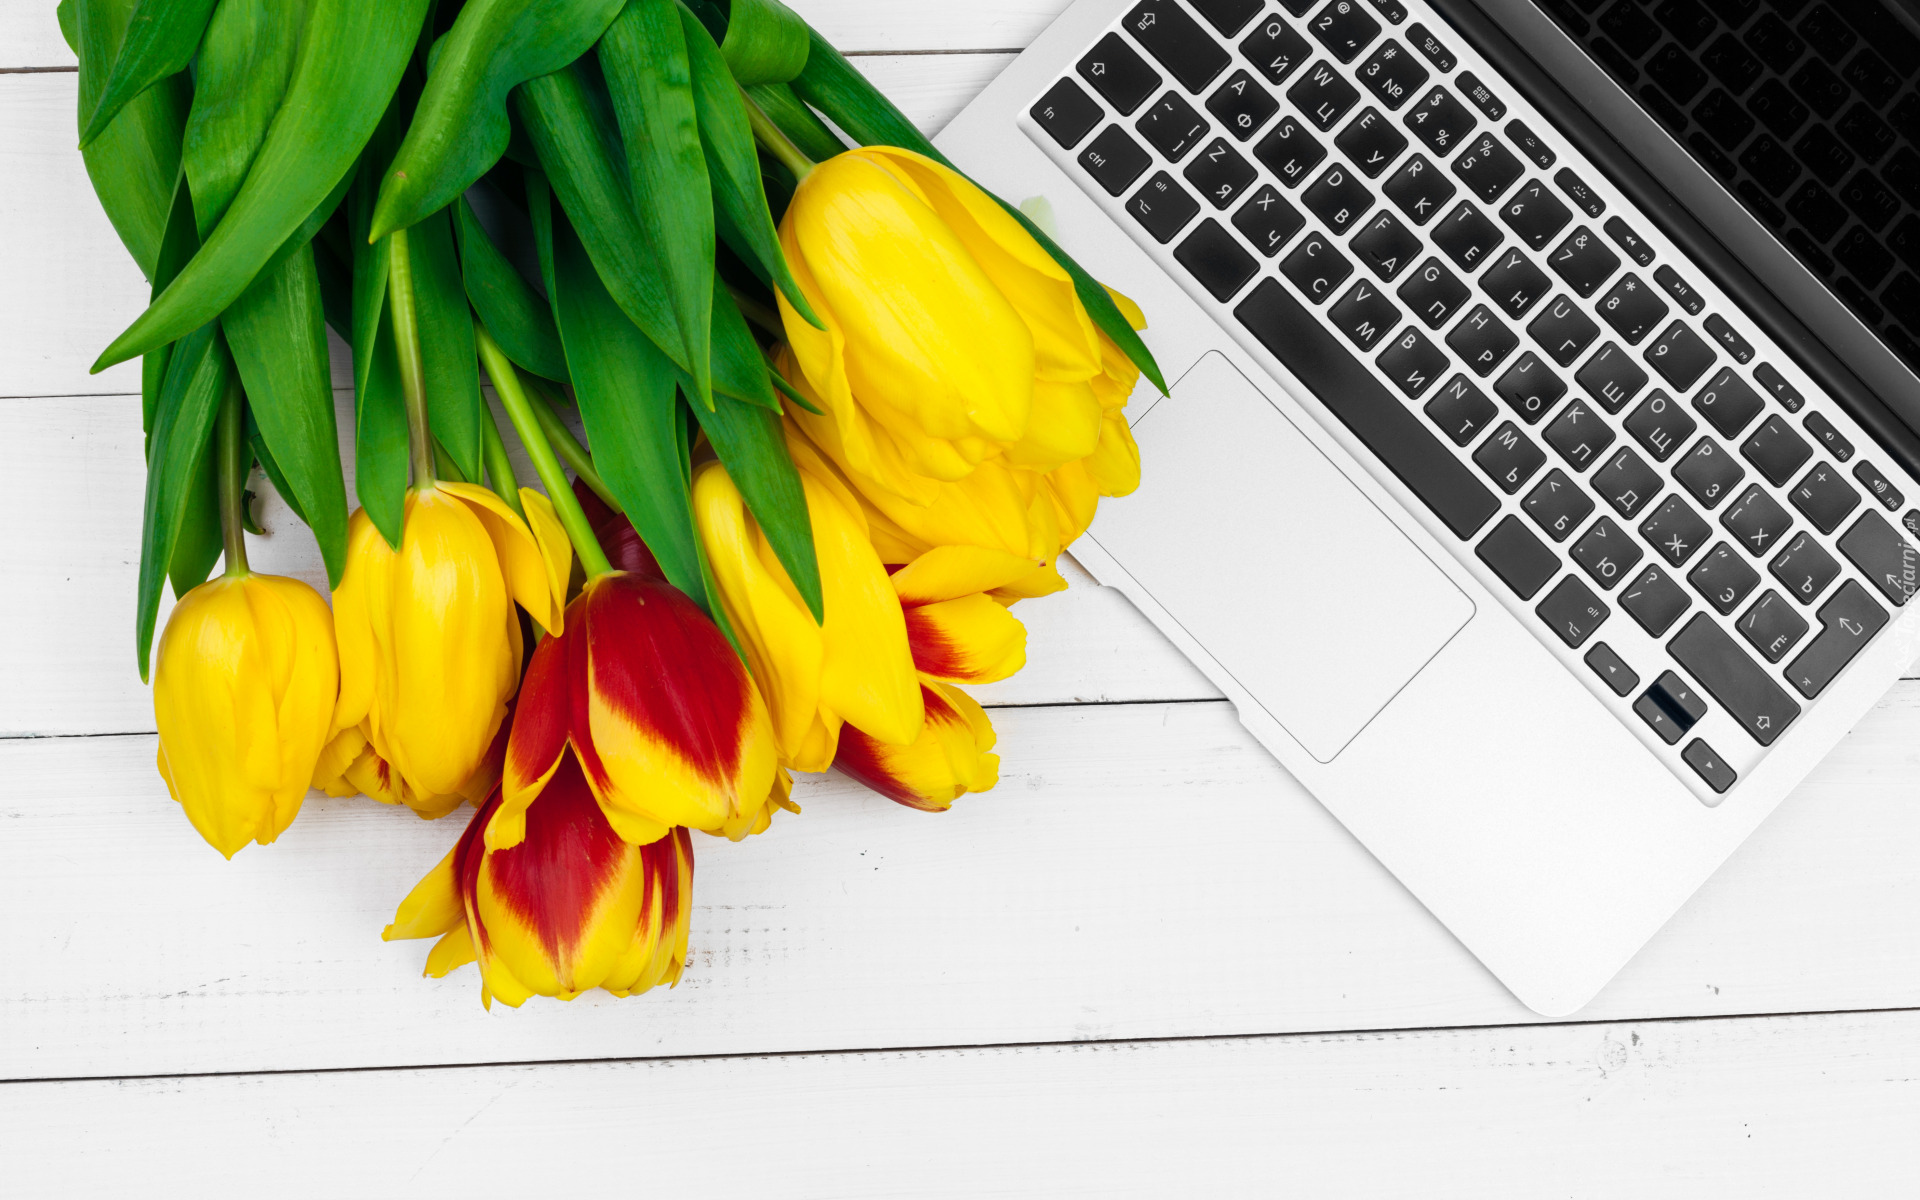 Kwiaty, Kolorowe, Tulipany, Laptop, Białe, Deski